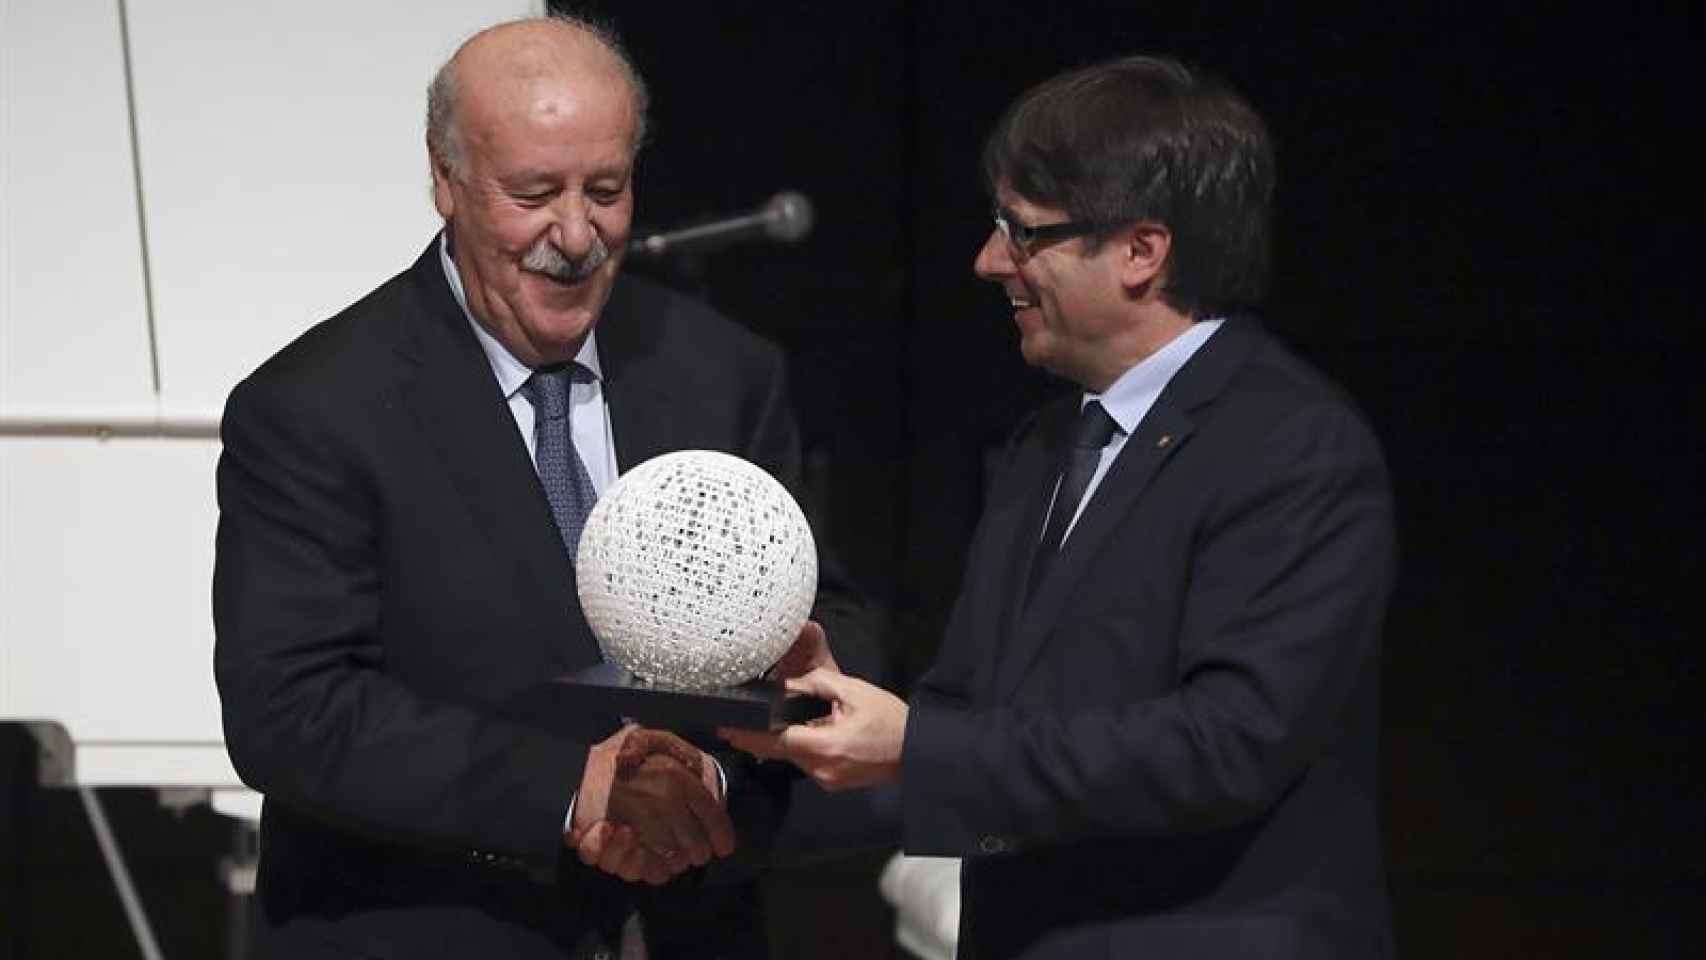 El presidente de la Generalitat, Carles Puigdemont entrega al entrenador de fútbol Vicente del Bosque el premio Blanquerna, durante la XIX gala de los premios que otorga la Generalitat de Catalunya, hoy en el Museo Reina Sofía en Madrid.